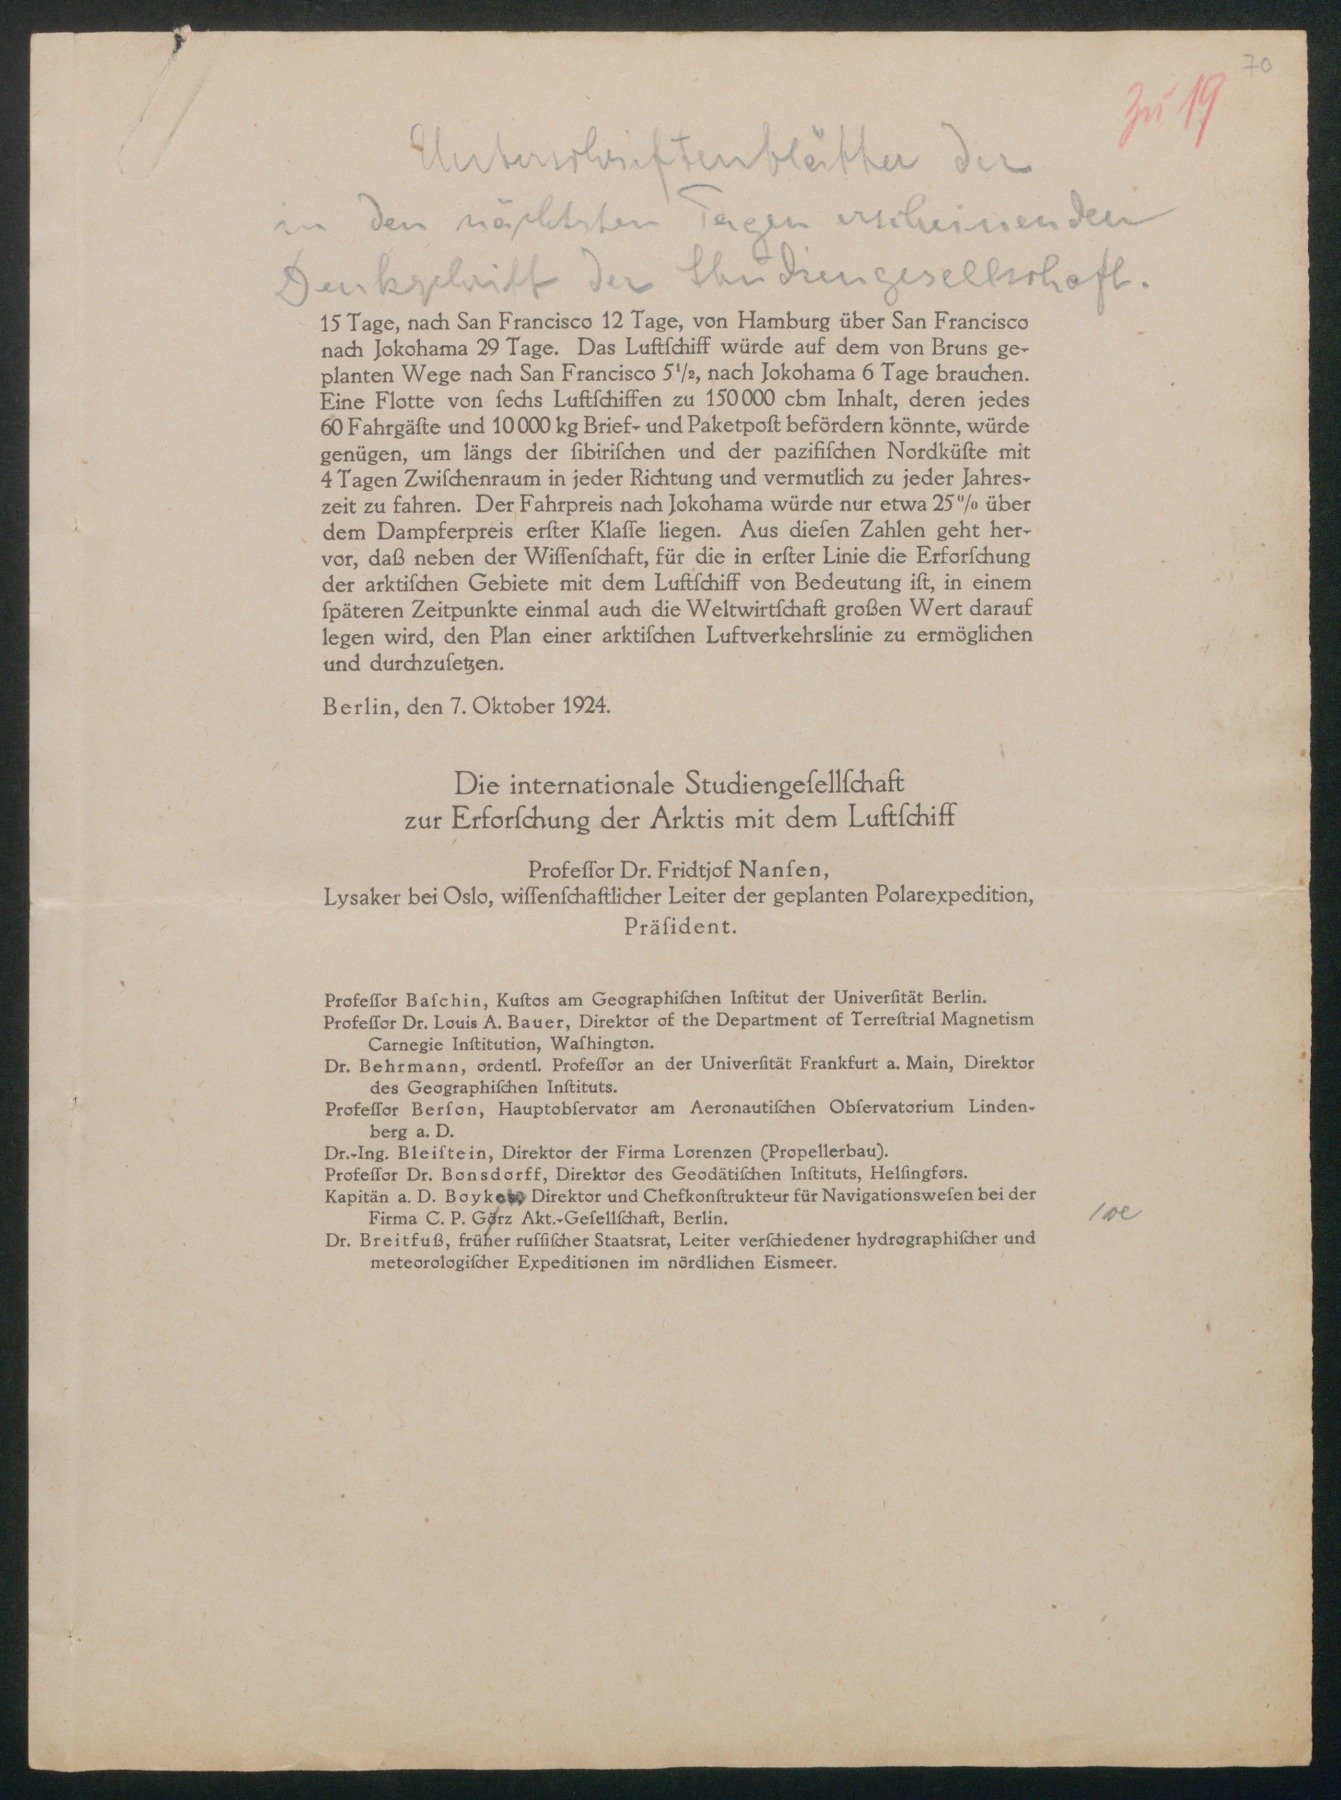 letzte Seite der gedruckten Denkschrift und Unterschriftenliste (Wettermuseum CC BY-NC-SA)